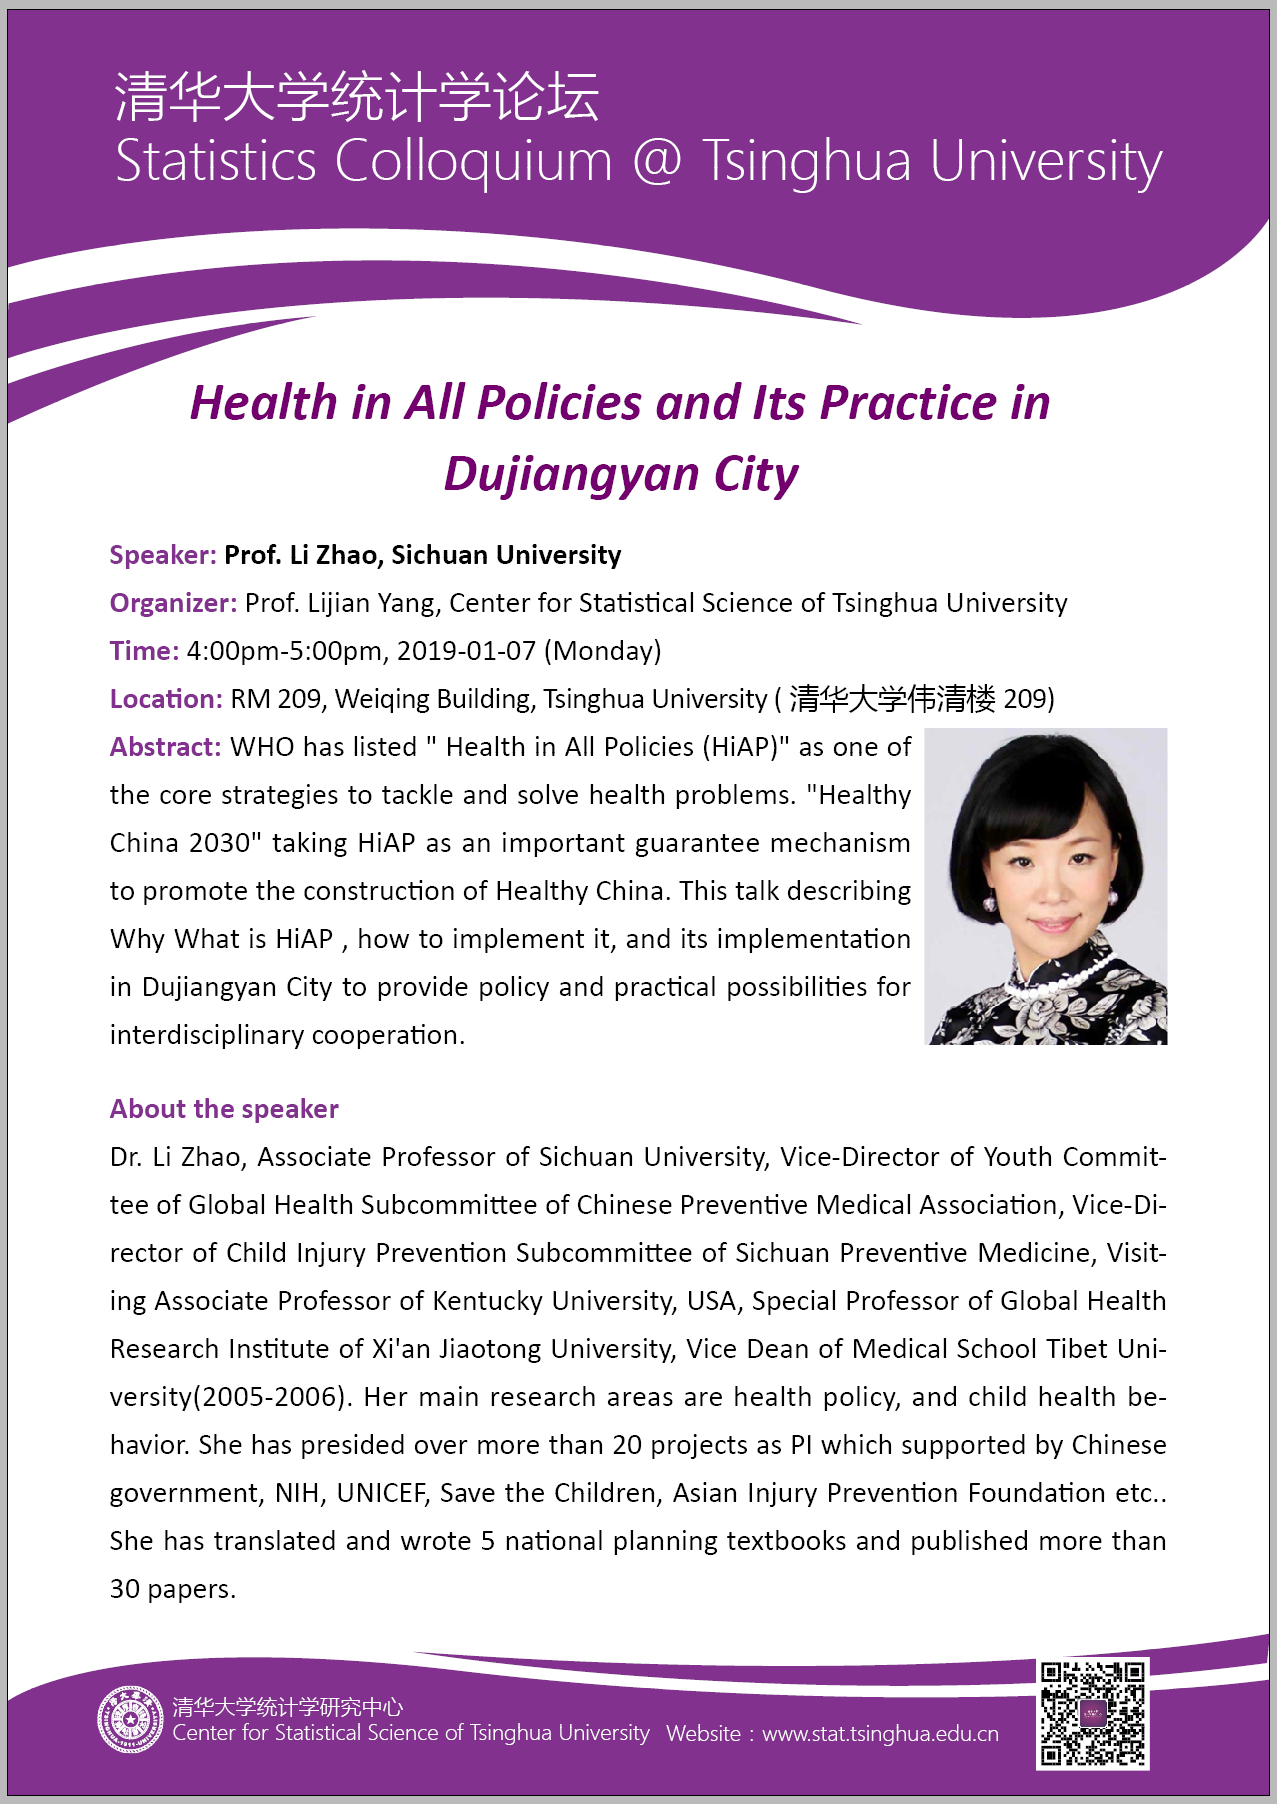 【统计学论坛】Health in All Policies and Its Practice in Dujiangyan City